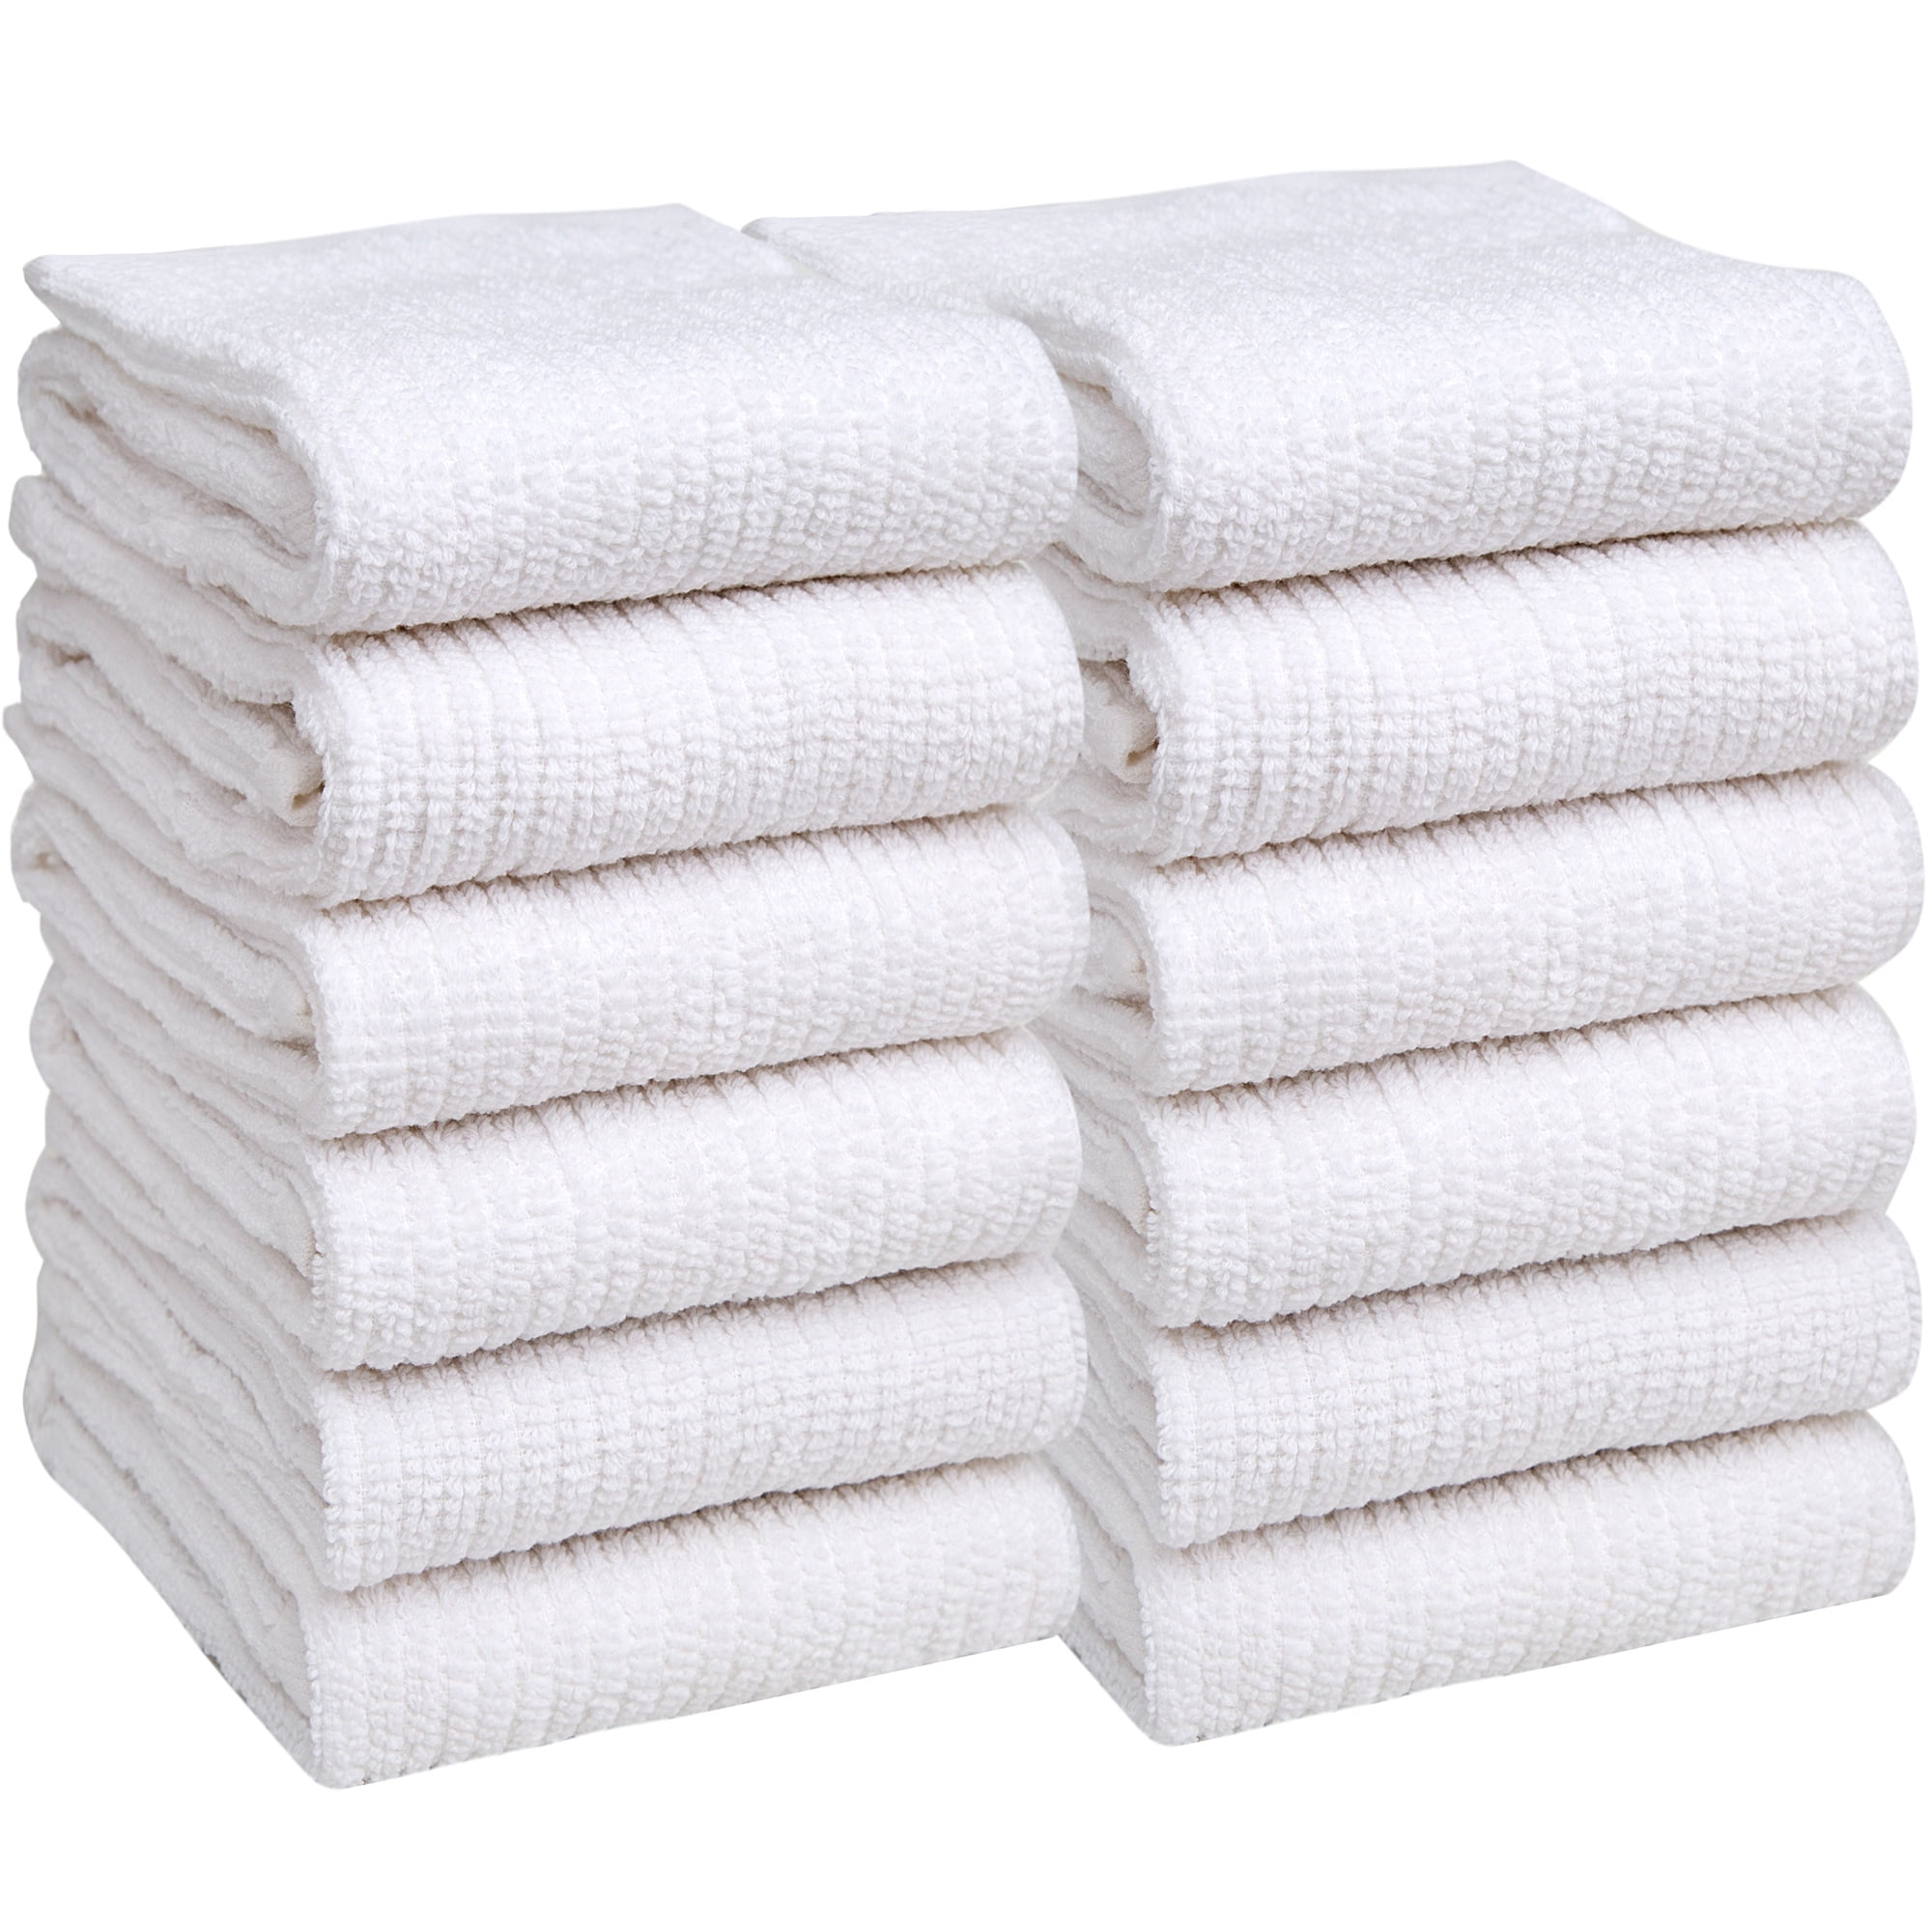 Bumble Towels Premium Kitchen Towels (20”x 28”, 6 Pack) - Large